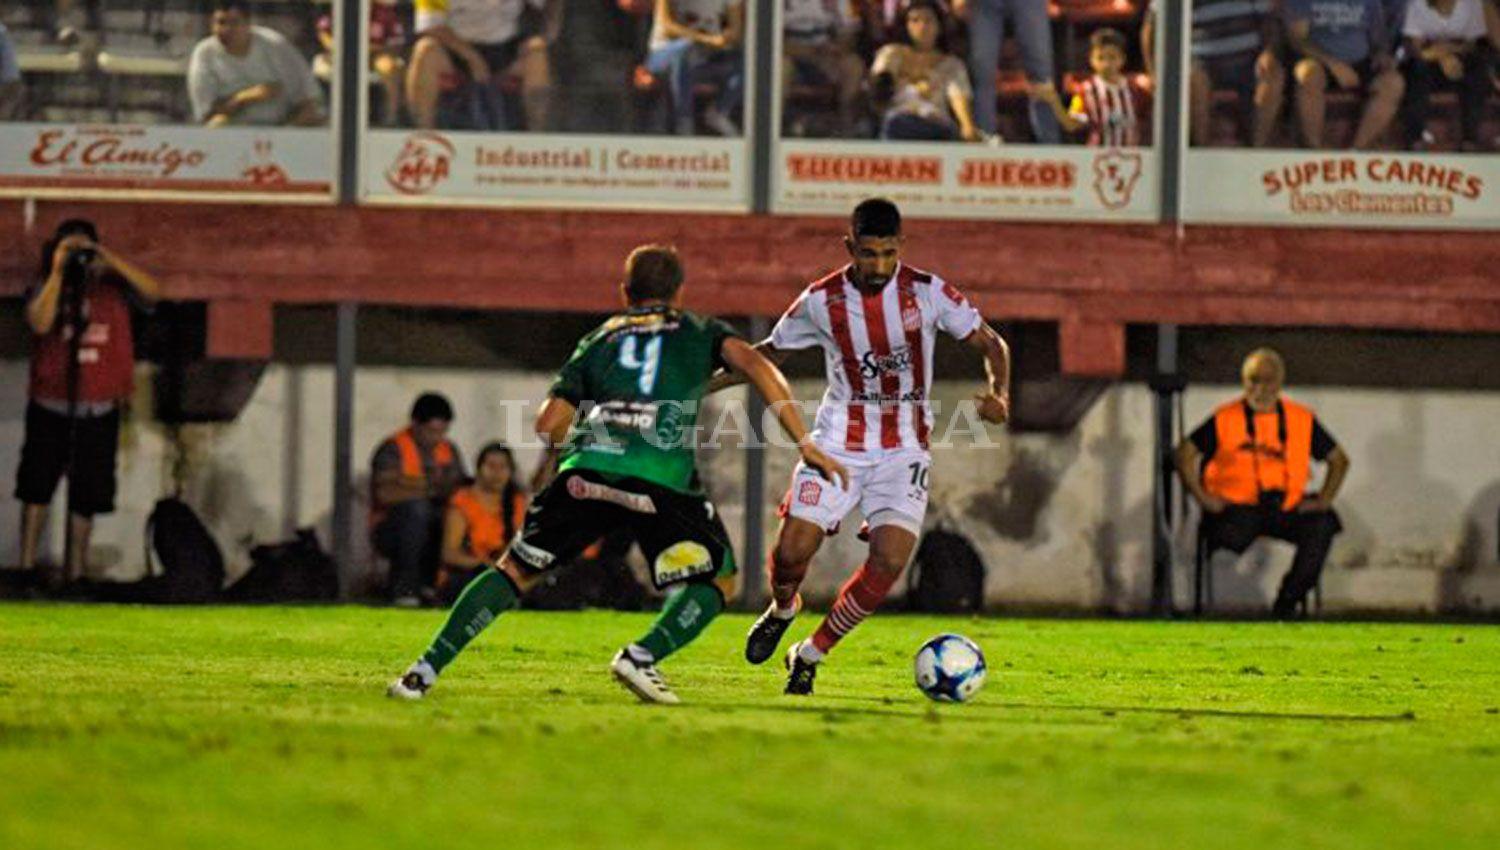 García fue el autor del gol que le dio hizo festejar a los fanáticos en La Ciudadela. LA GACETA/FOTO DE DIEGO ARÁOZ